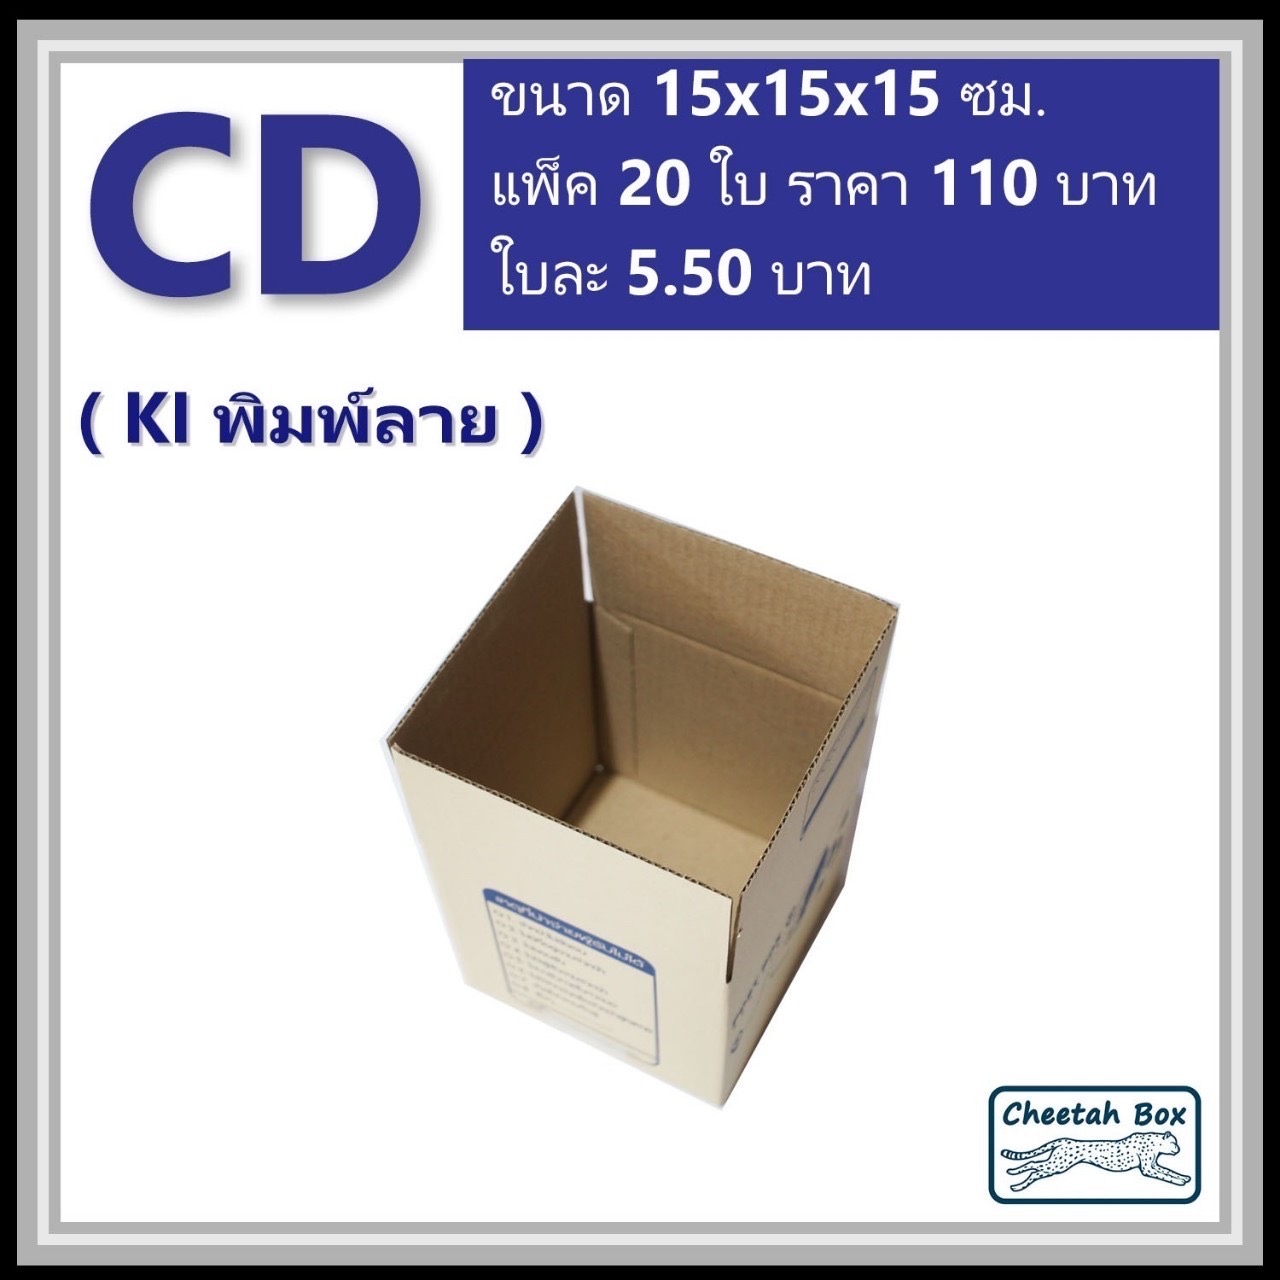 กล่องไปรษณีย์ CD (Cheetah Box ขนาด 15*315*15 CM)